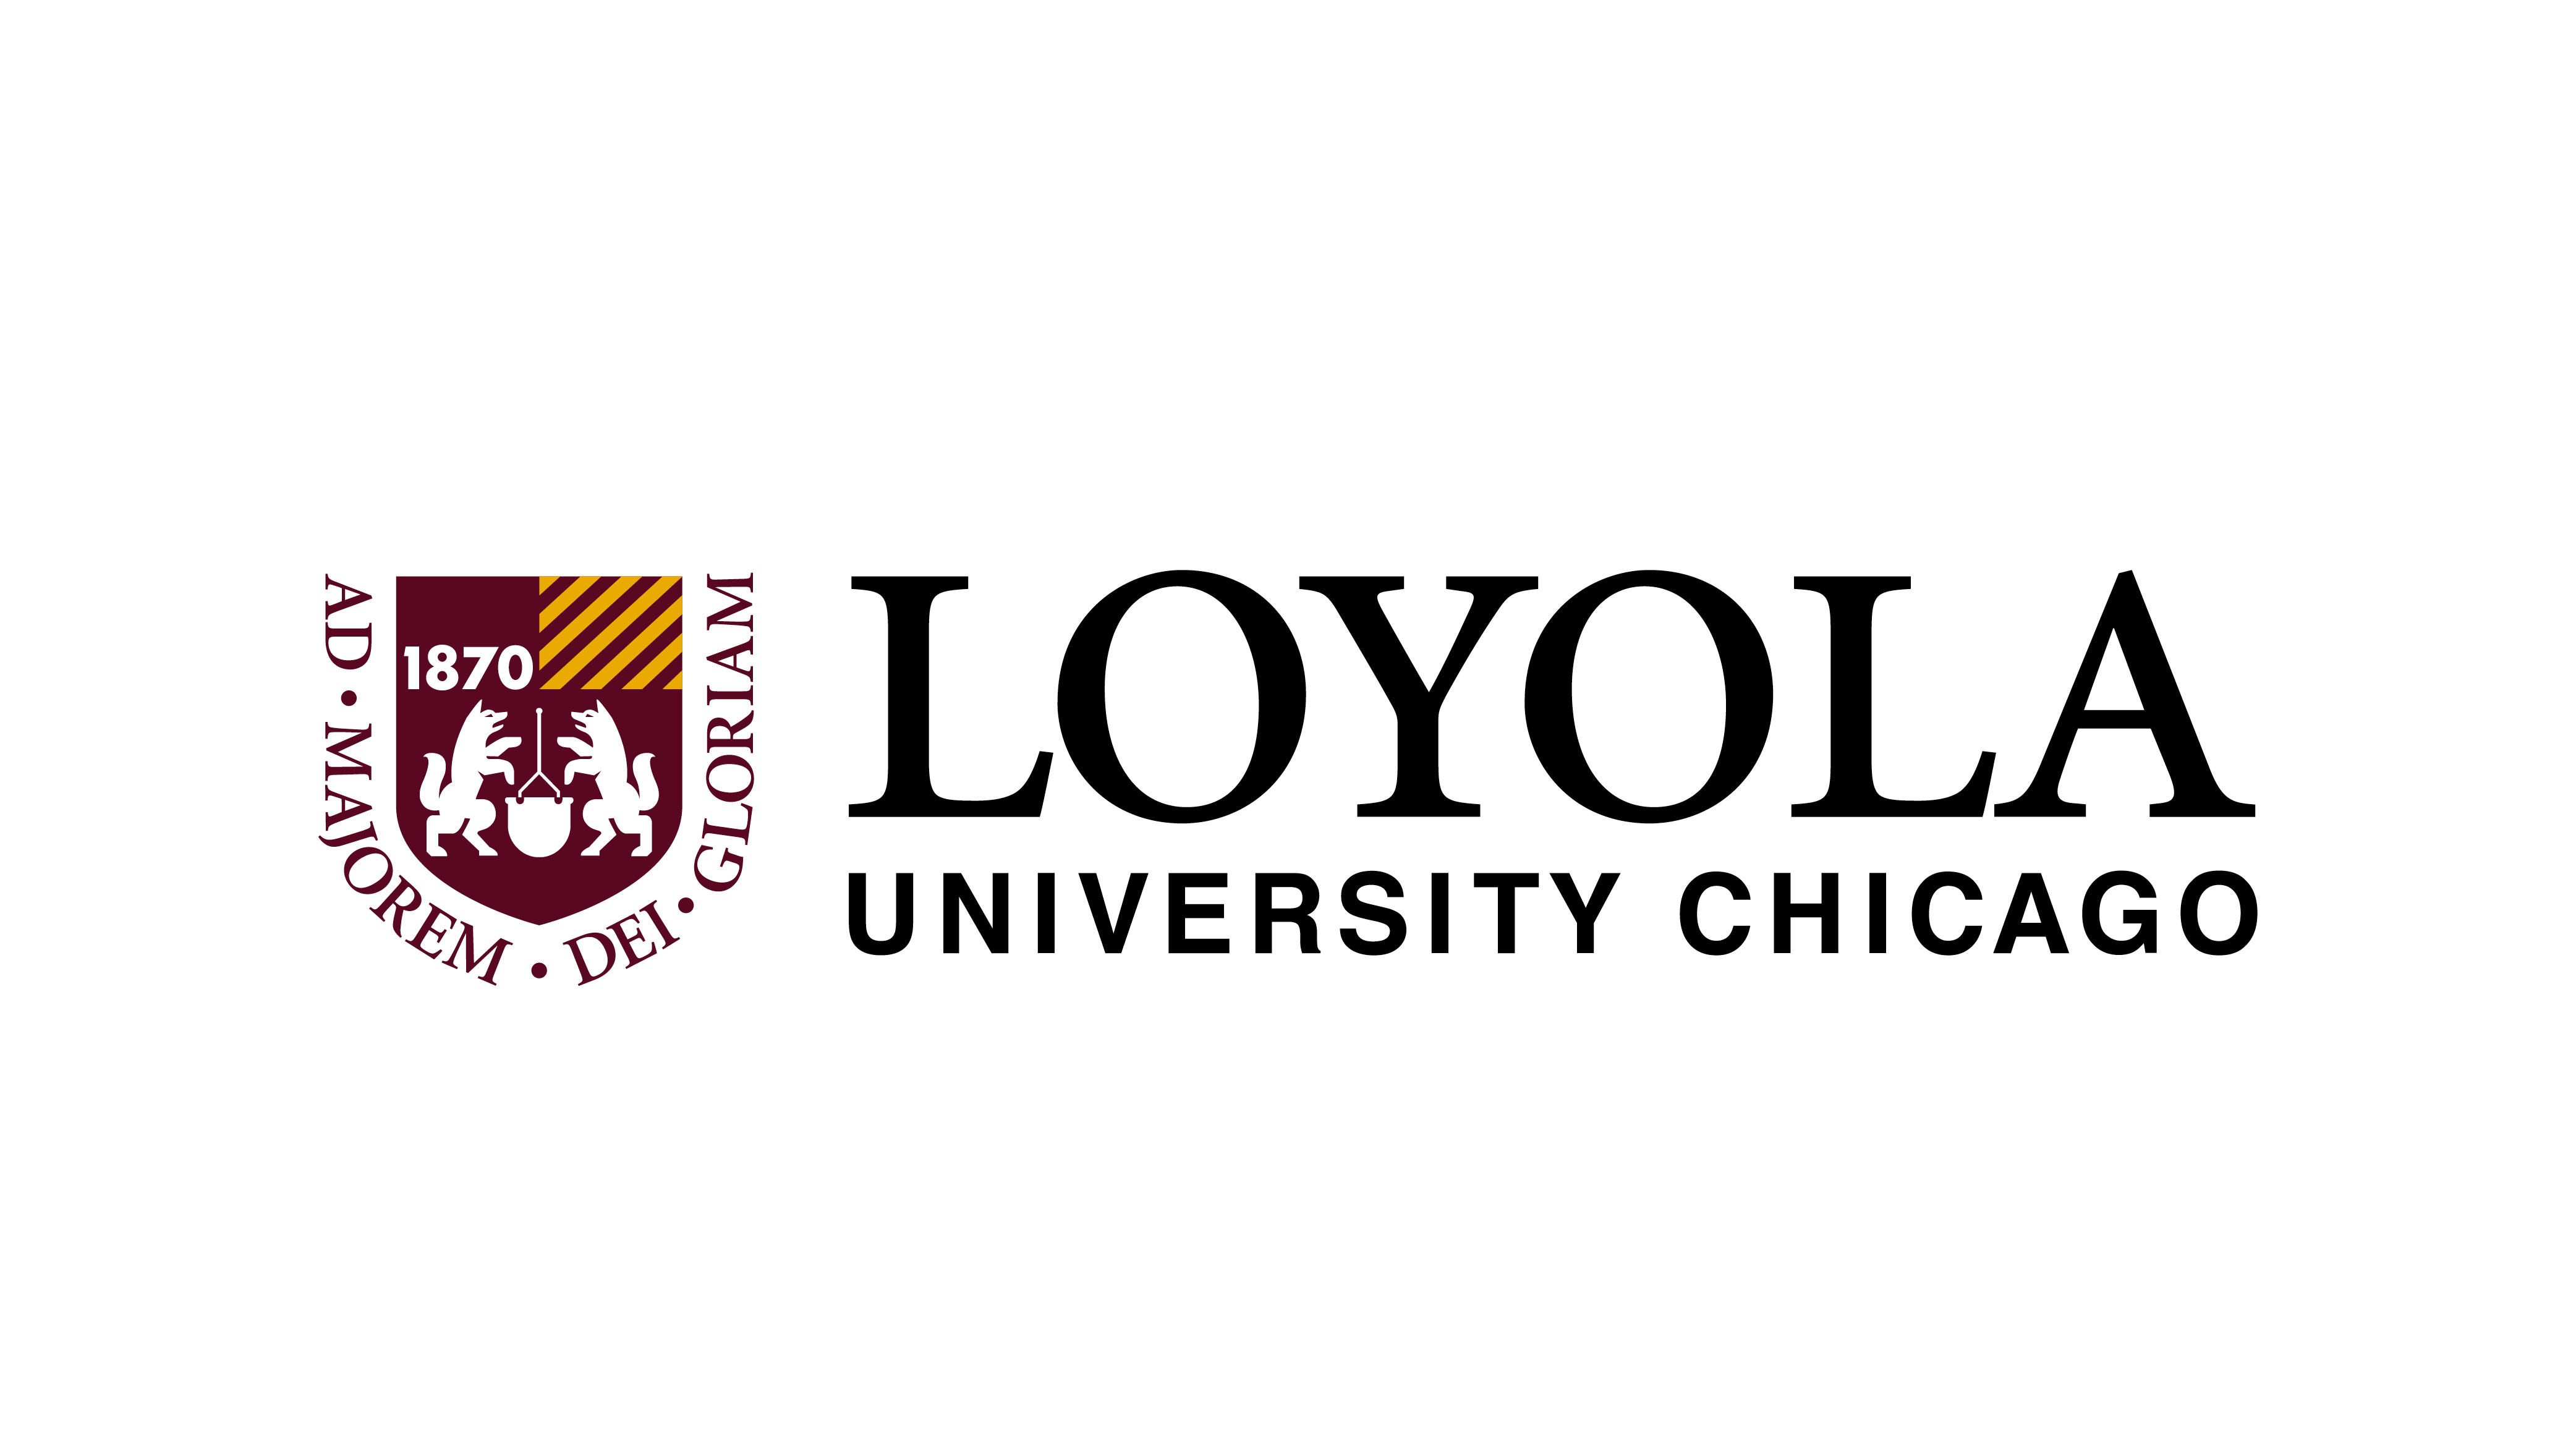 The Loyola University Chicago brand logo